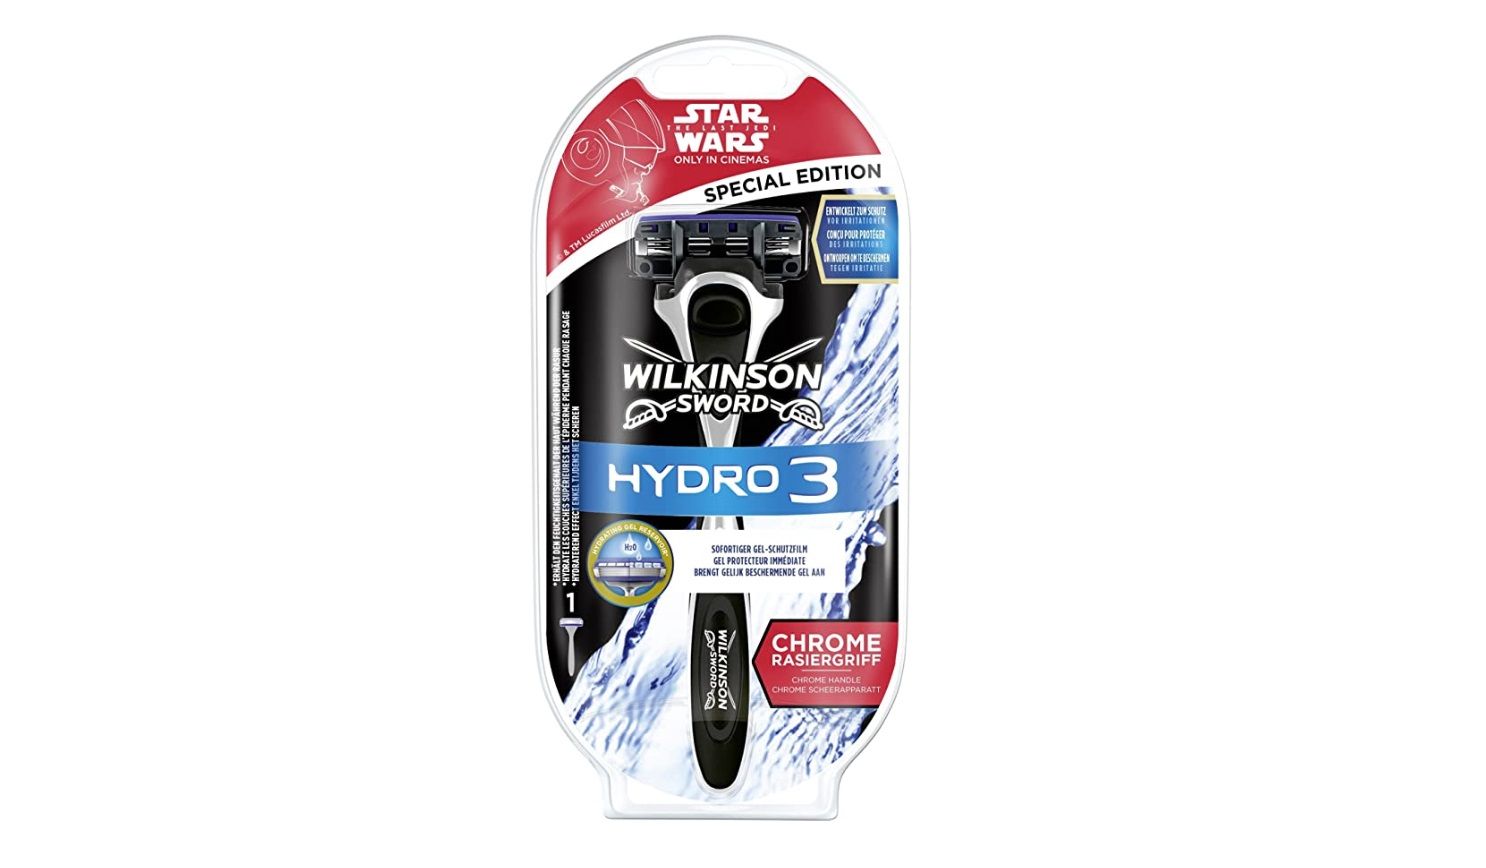 ¡Chollo! Maquinilla Wilkinson Sword Hydro 3 Star Wars Special Edition por sólo 8,50€ (antes 14,25€)